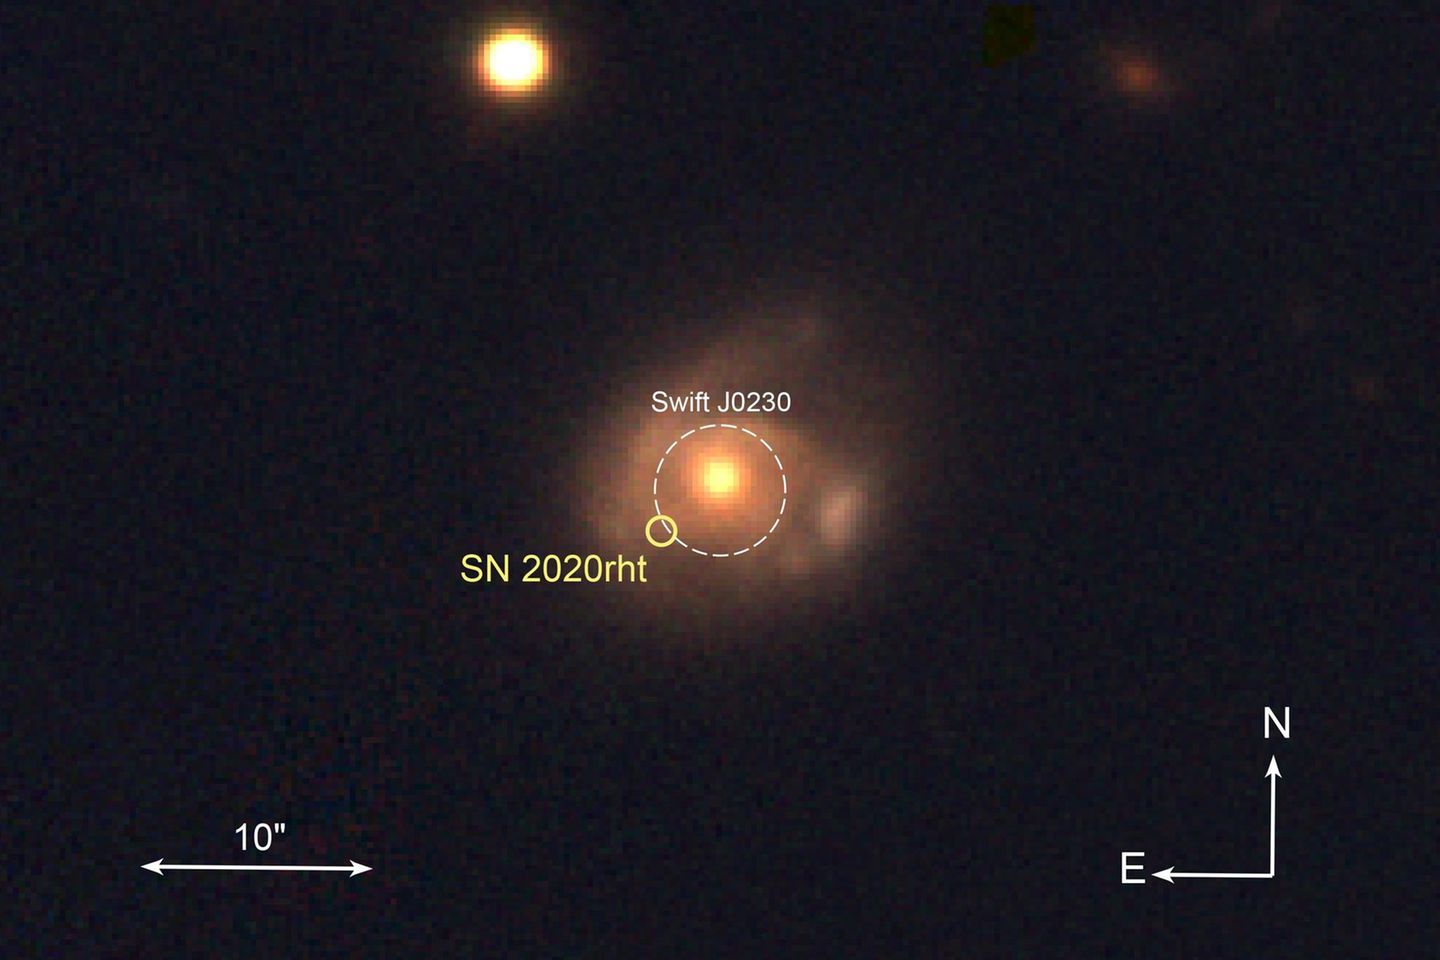 Ein Emitter (in der Mitte des weißen Kreises) setzt Röntgenstrahlung frei und macht die kosmische Aktivität sichtbar: Im Abstand von etwa 25 Tagen entreißt ein Schwarzes Loch einem Stern Materie